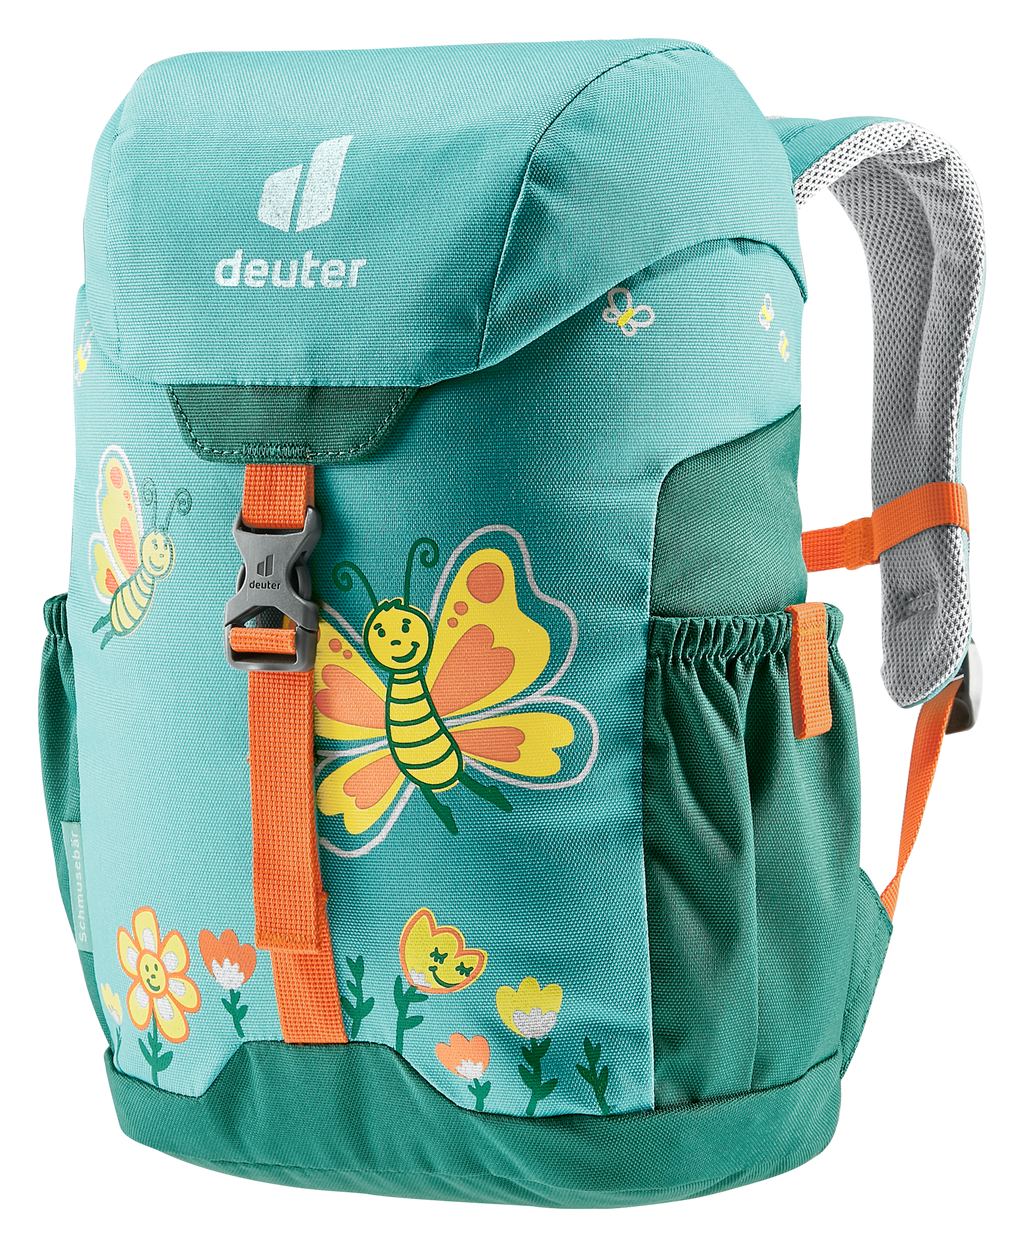 Deuter Backpack - Schmusebar - Dust Blue/Alpine Green-Mountain Baby